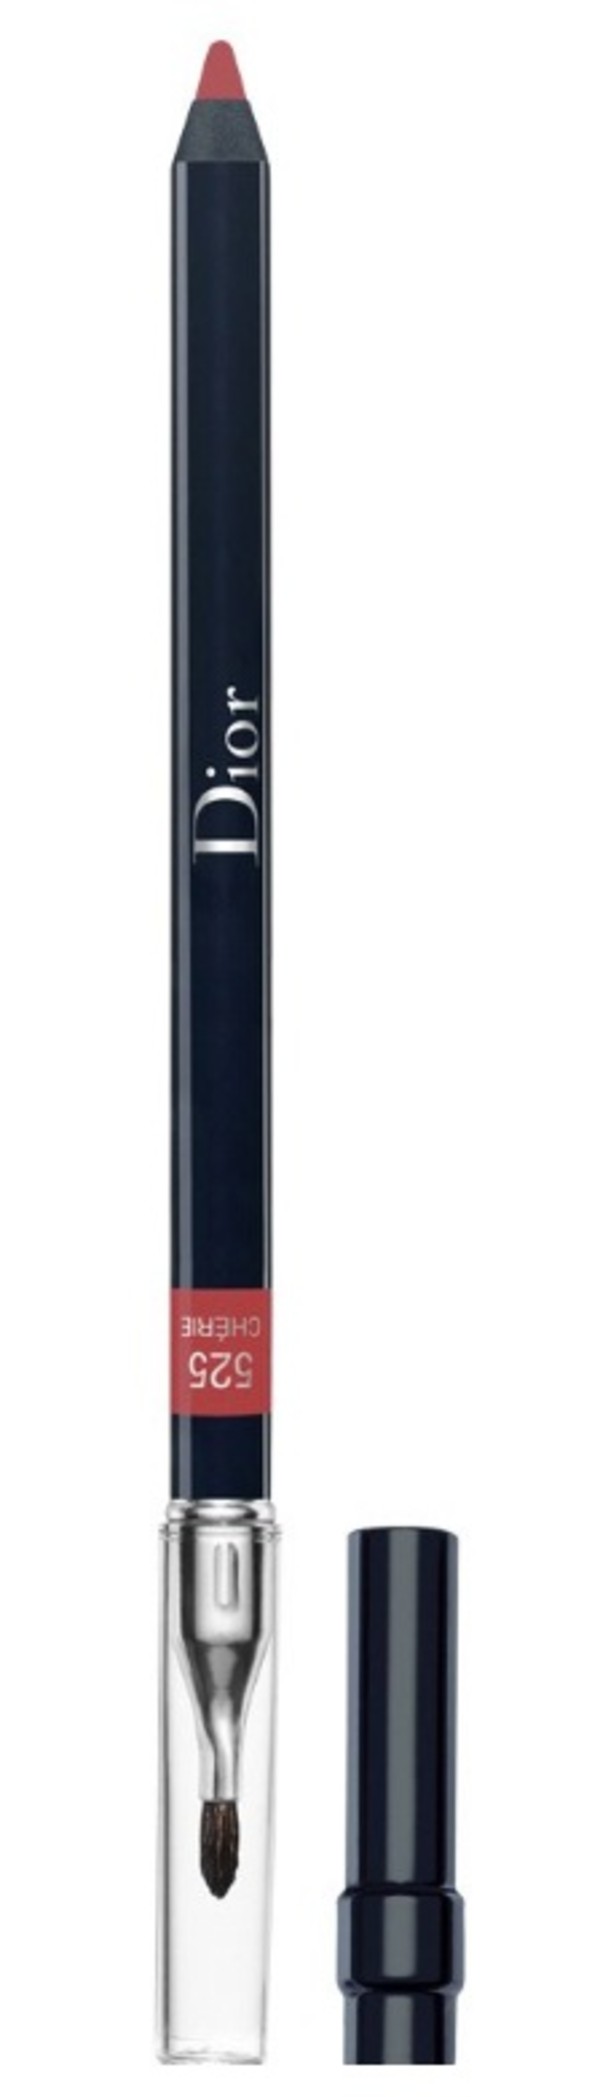 Contour Lip Liner Pencil 525 Cherie Konturówka do ust